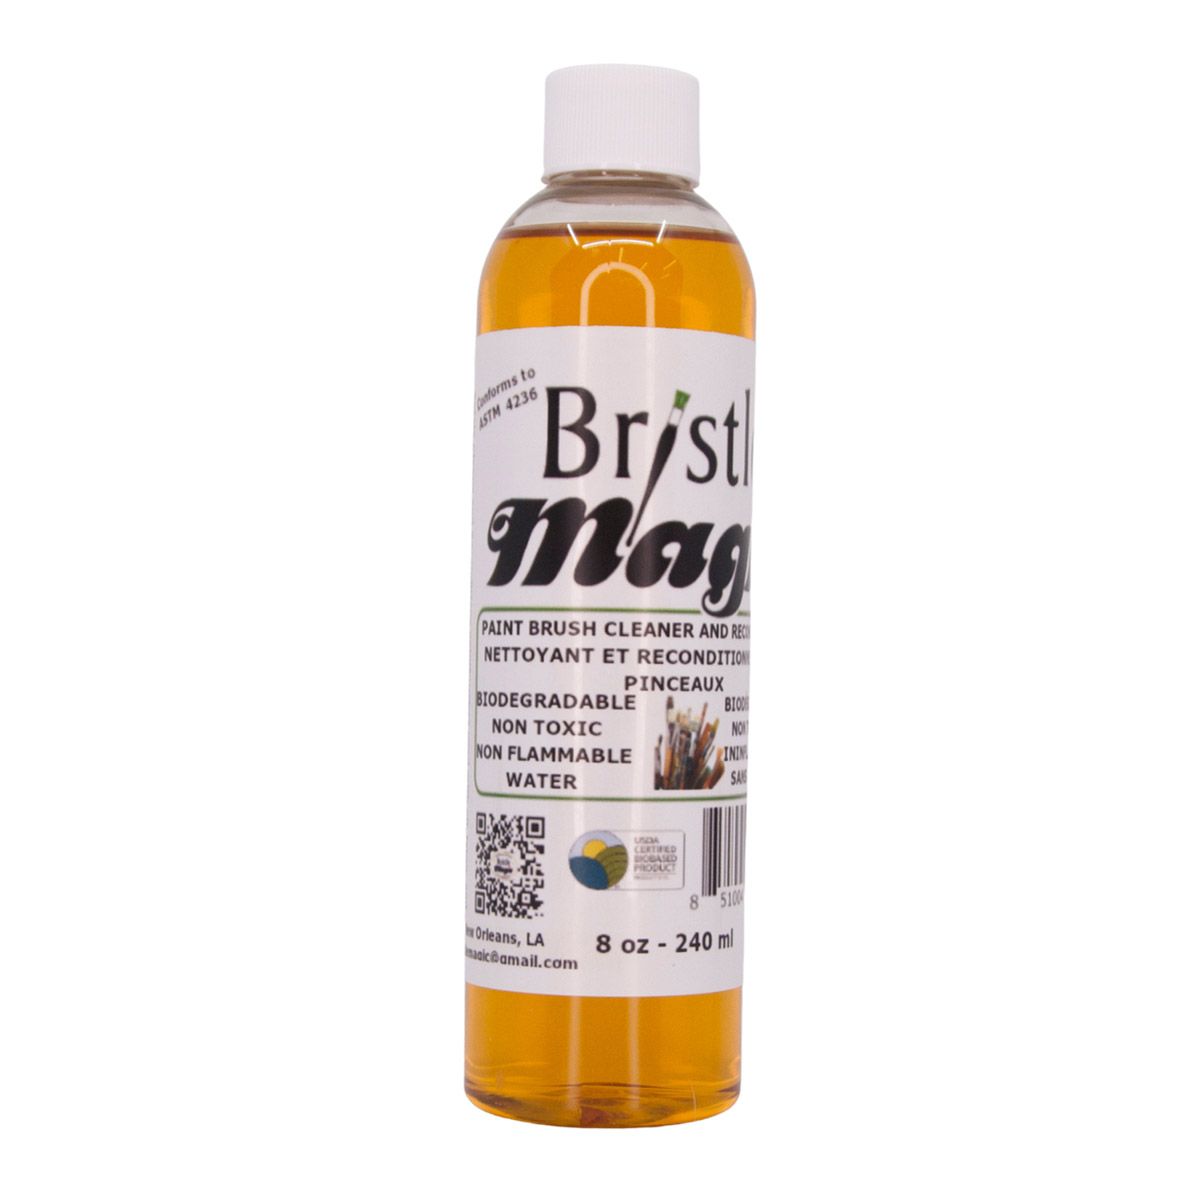 Bristle Magic Paint Brush Cleaner (240 ml) 8 oz